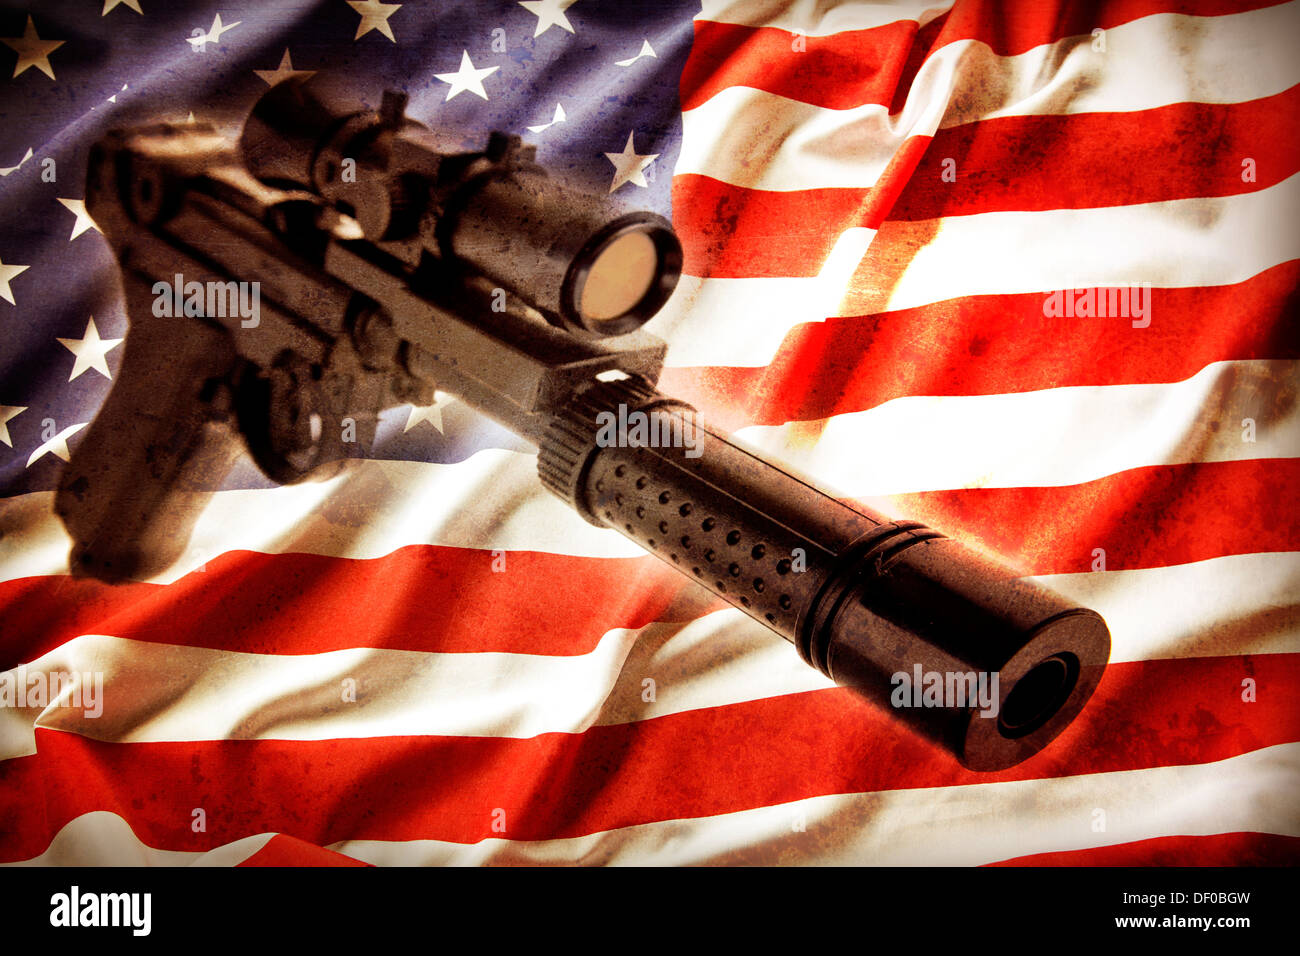 Handgun and American flag. Gun control concept. Stock Photo